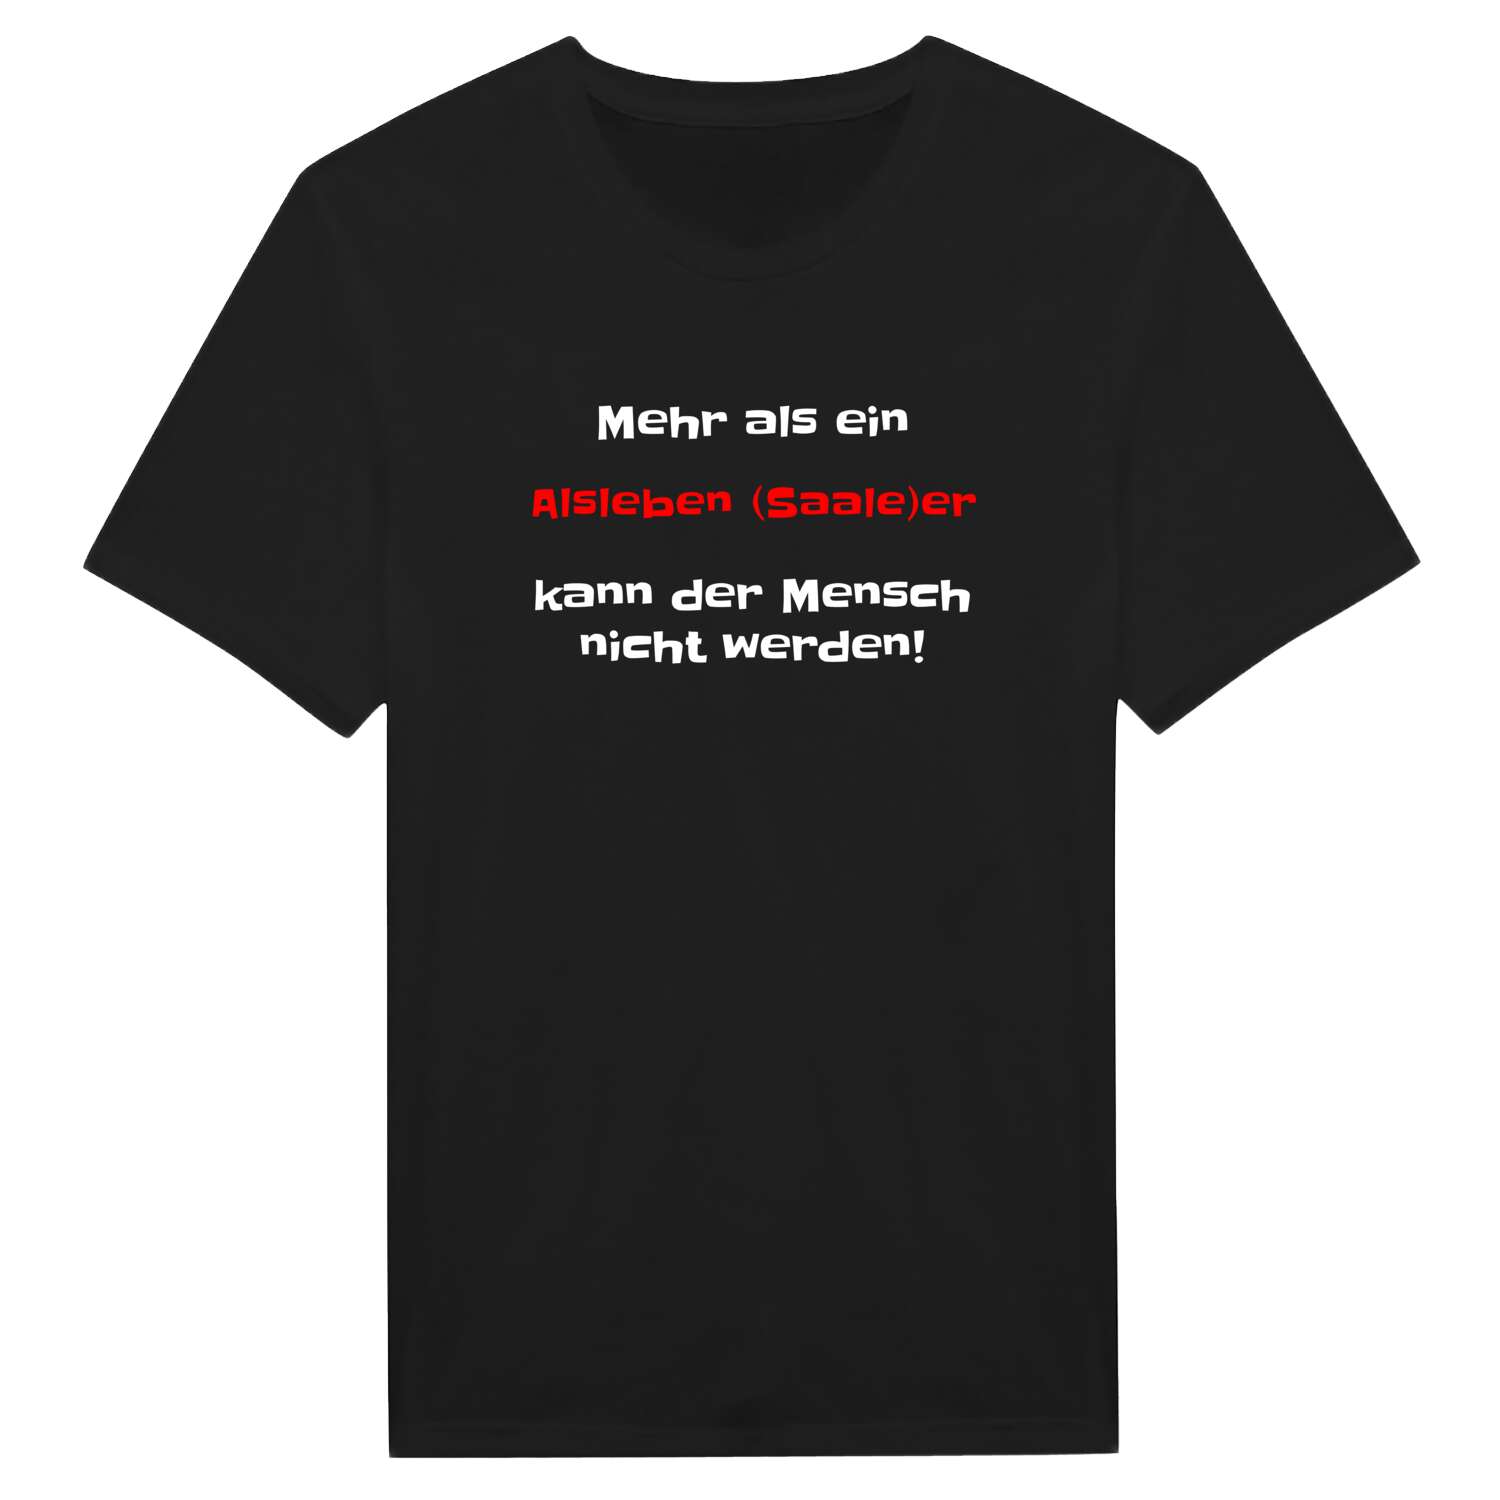 Alsleben (Saale) T-Shirt »Mehr als ein«